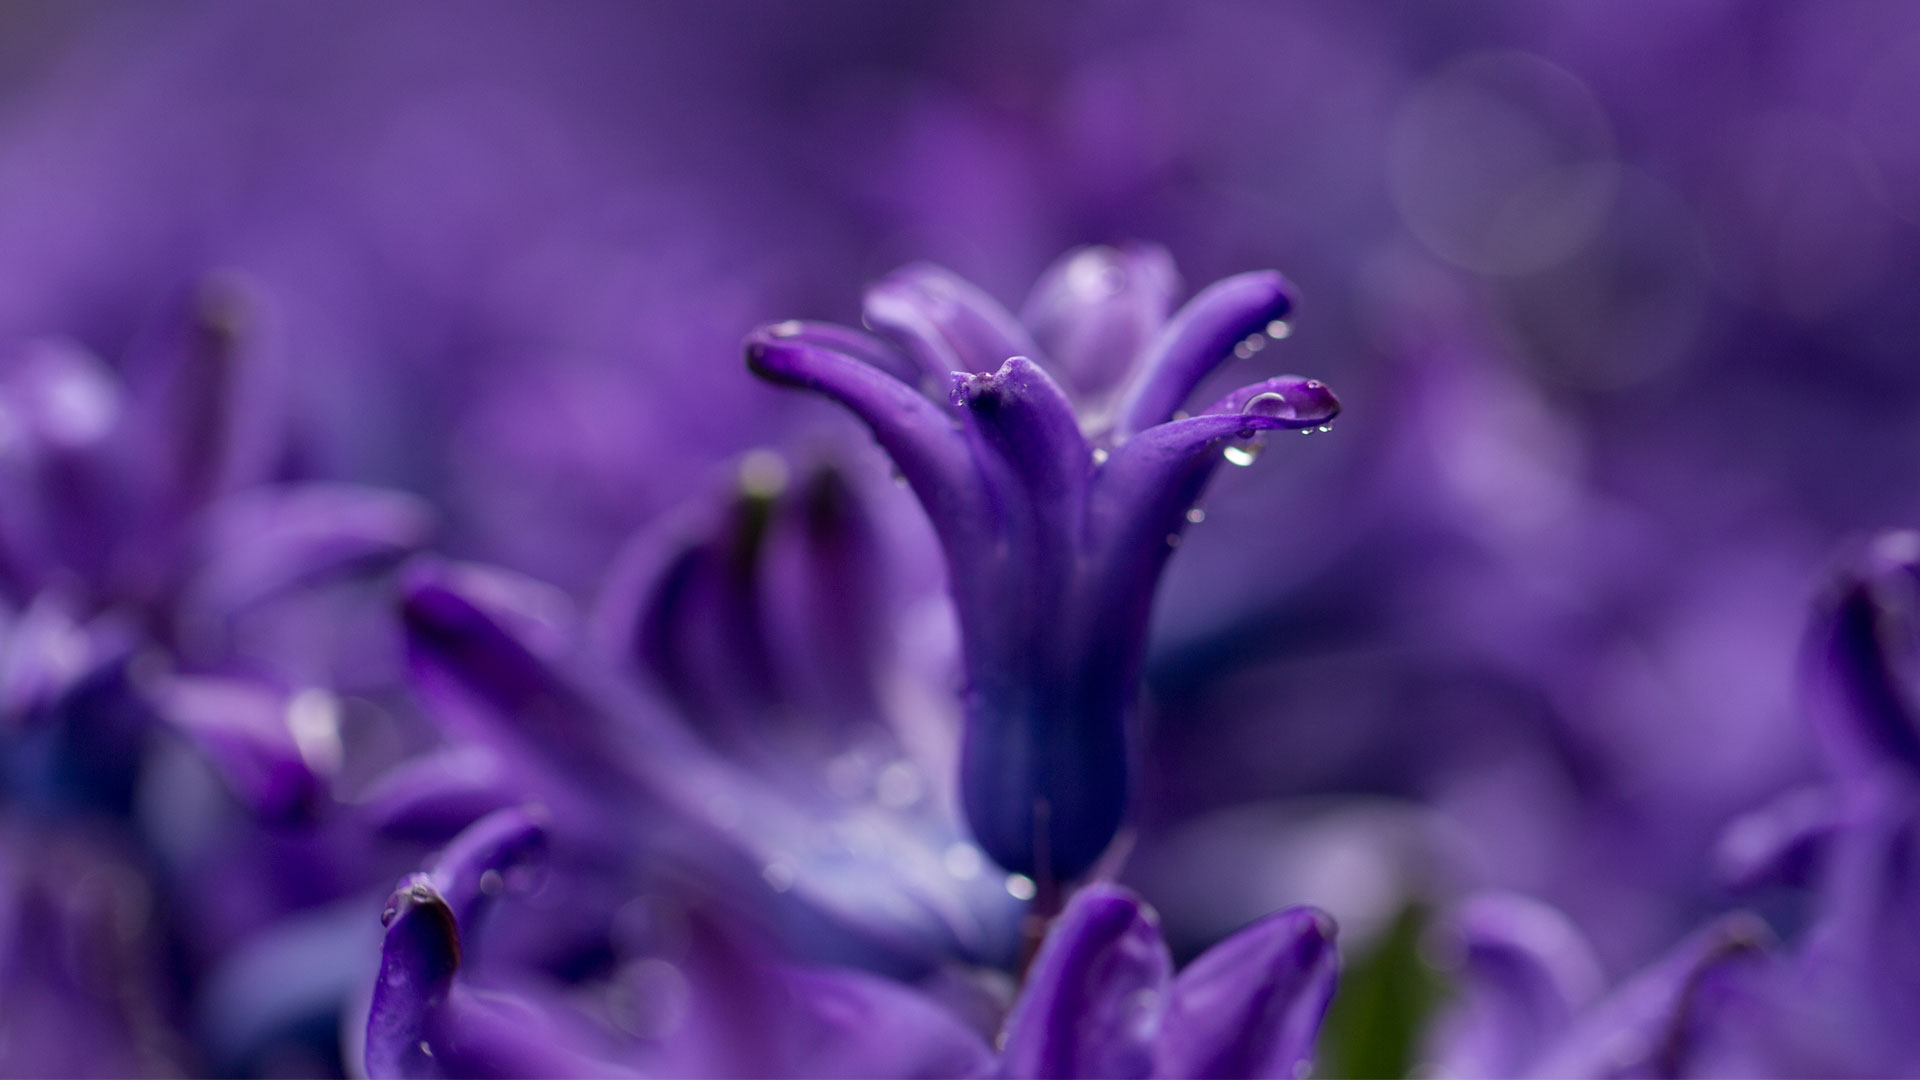 sfondi hd per laptop,pianta fiorita,blu,fiore,viola,viola